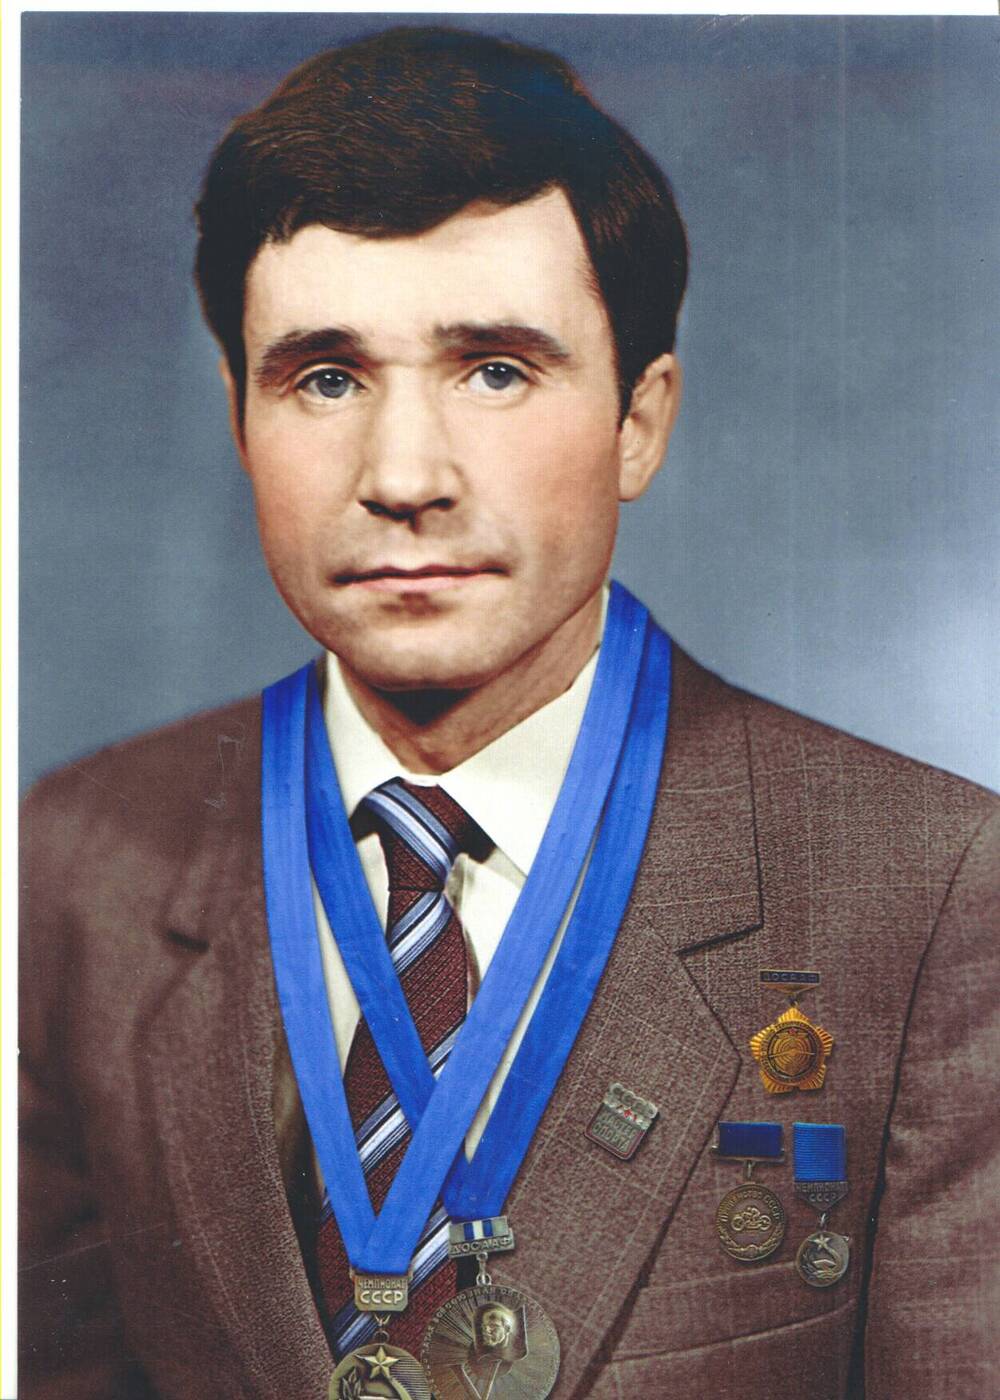 Фотопортрет. Бархатов Владимир Михайлович - неоднократный призер СССР, мастер спорта СССР по мотоспорту.